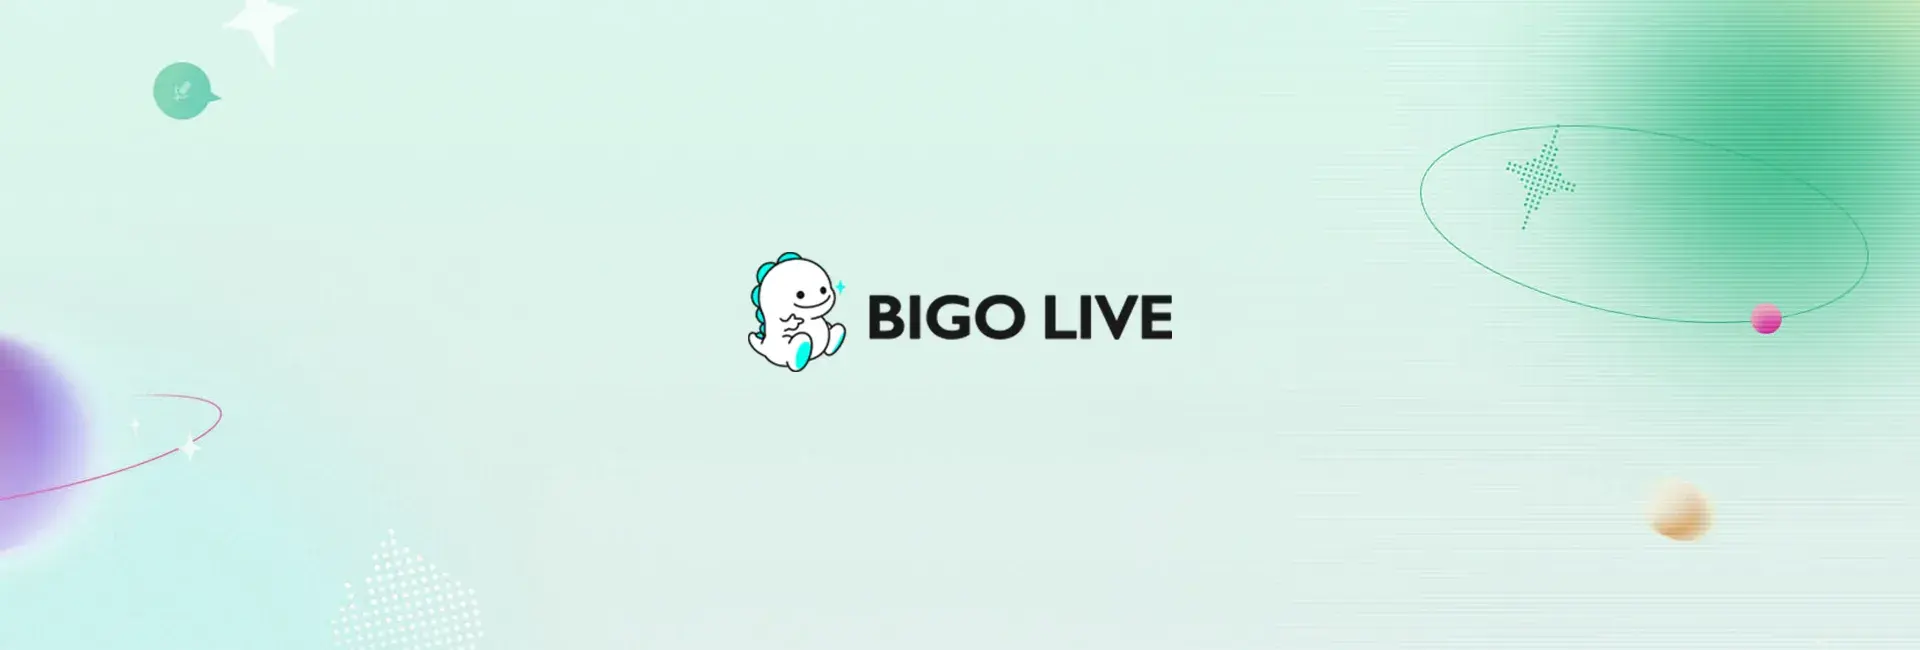 Bigo Live - 210 Diamonds (Global)